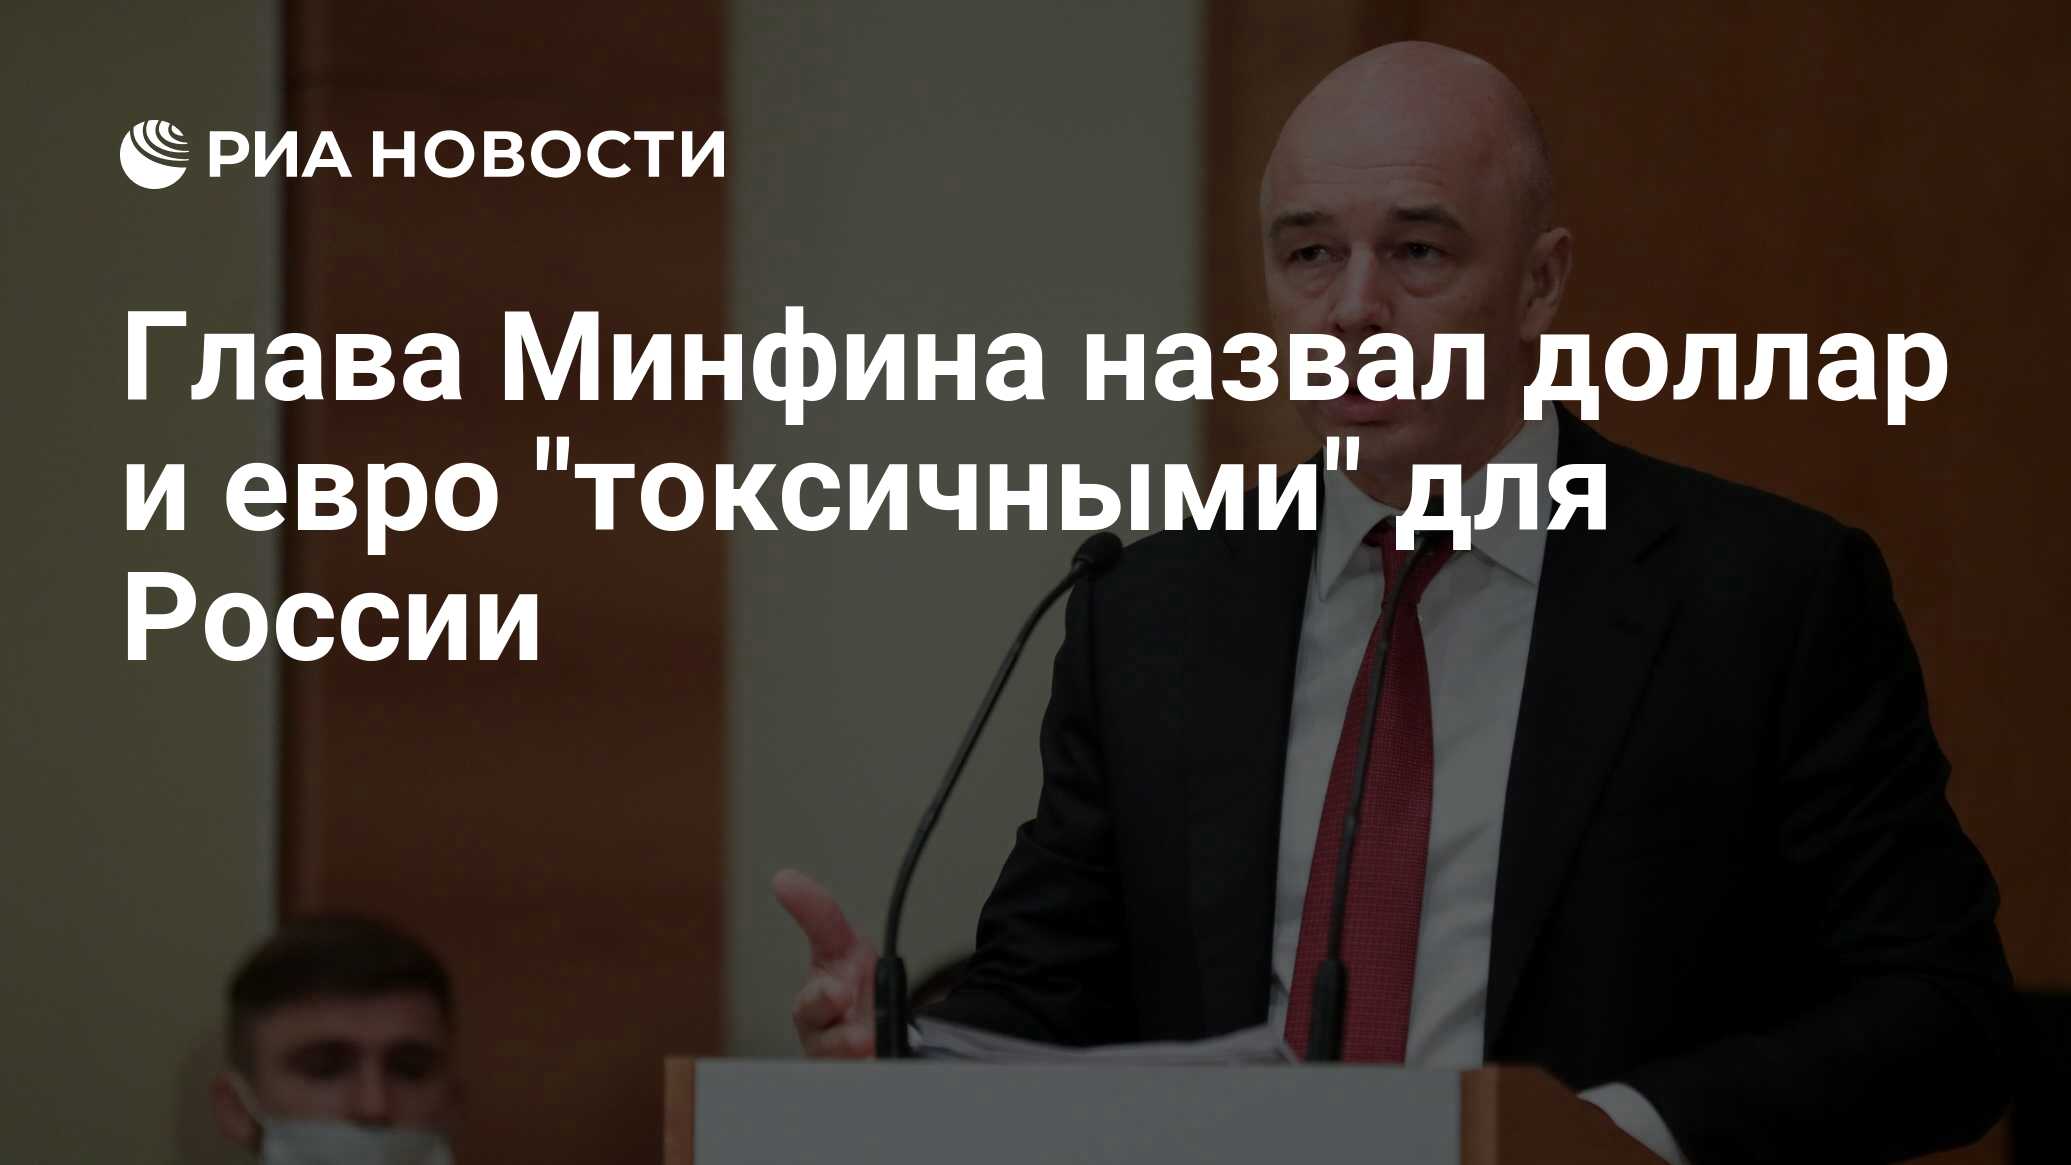 Глава Минфина назвал доллар и евро "токсичными" для России - РИА Новости, 12.07.2022